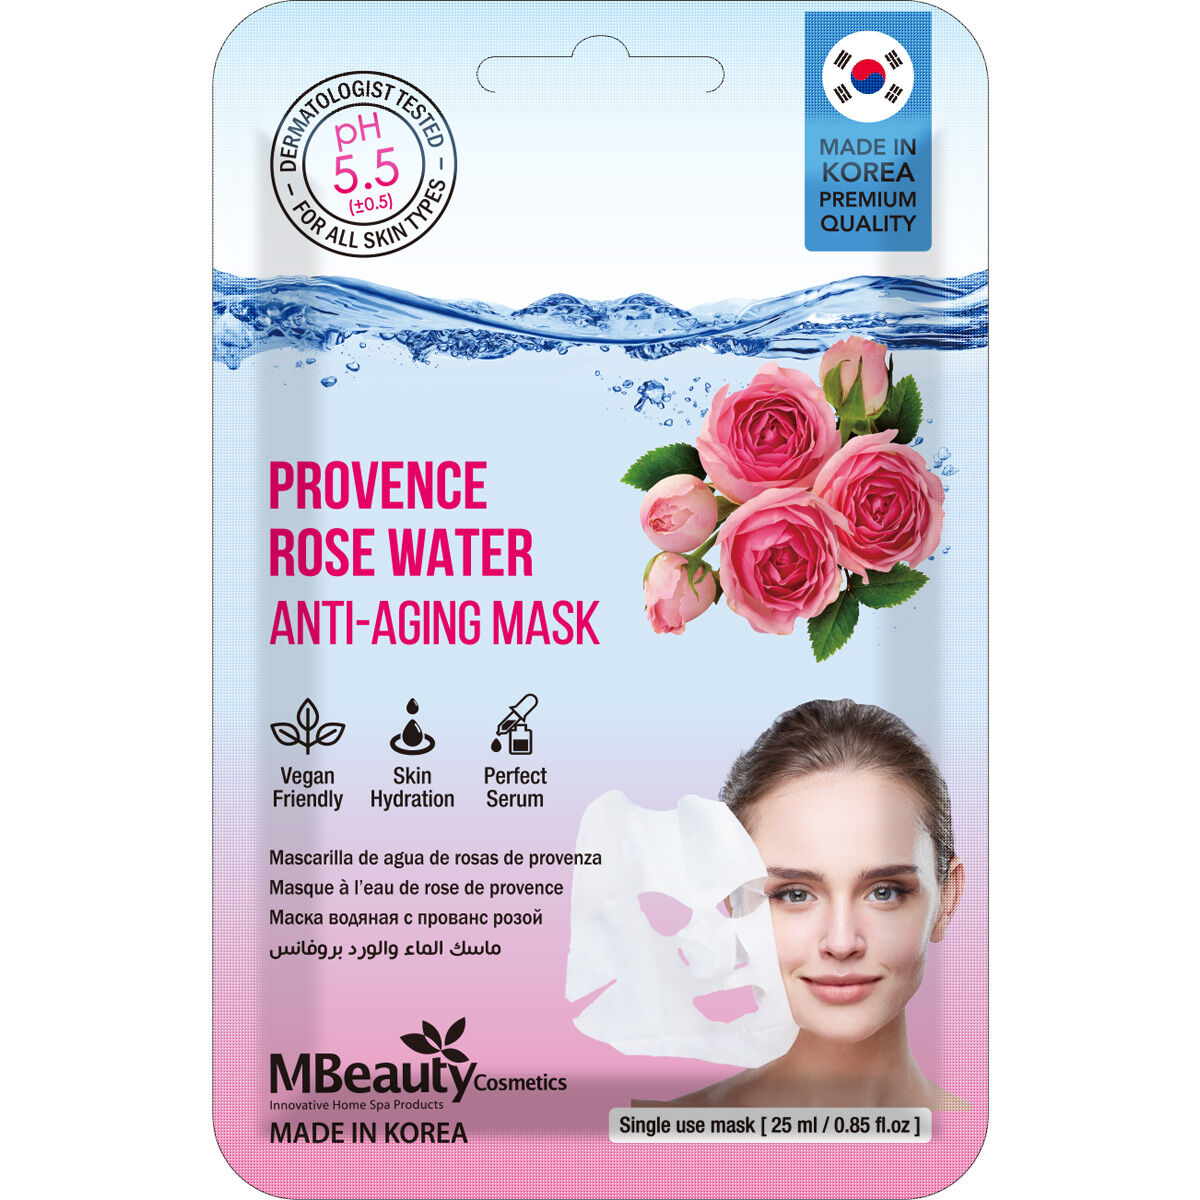 Омолаживающая маска для лица на ткани Mbeauty Botanical Water, 25 мл heritage store маска с розовой водой для сухой и комбинированной кожи 60 г 2 унции